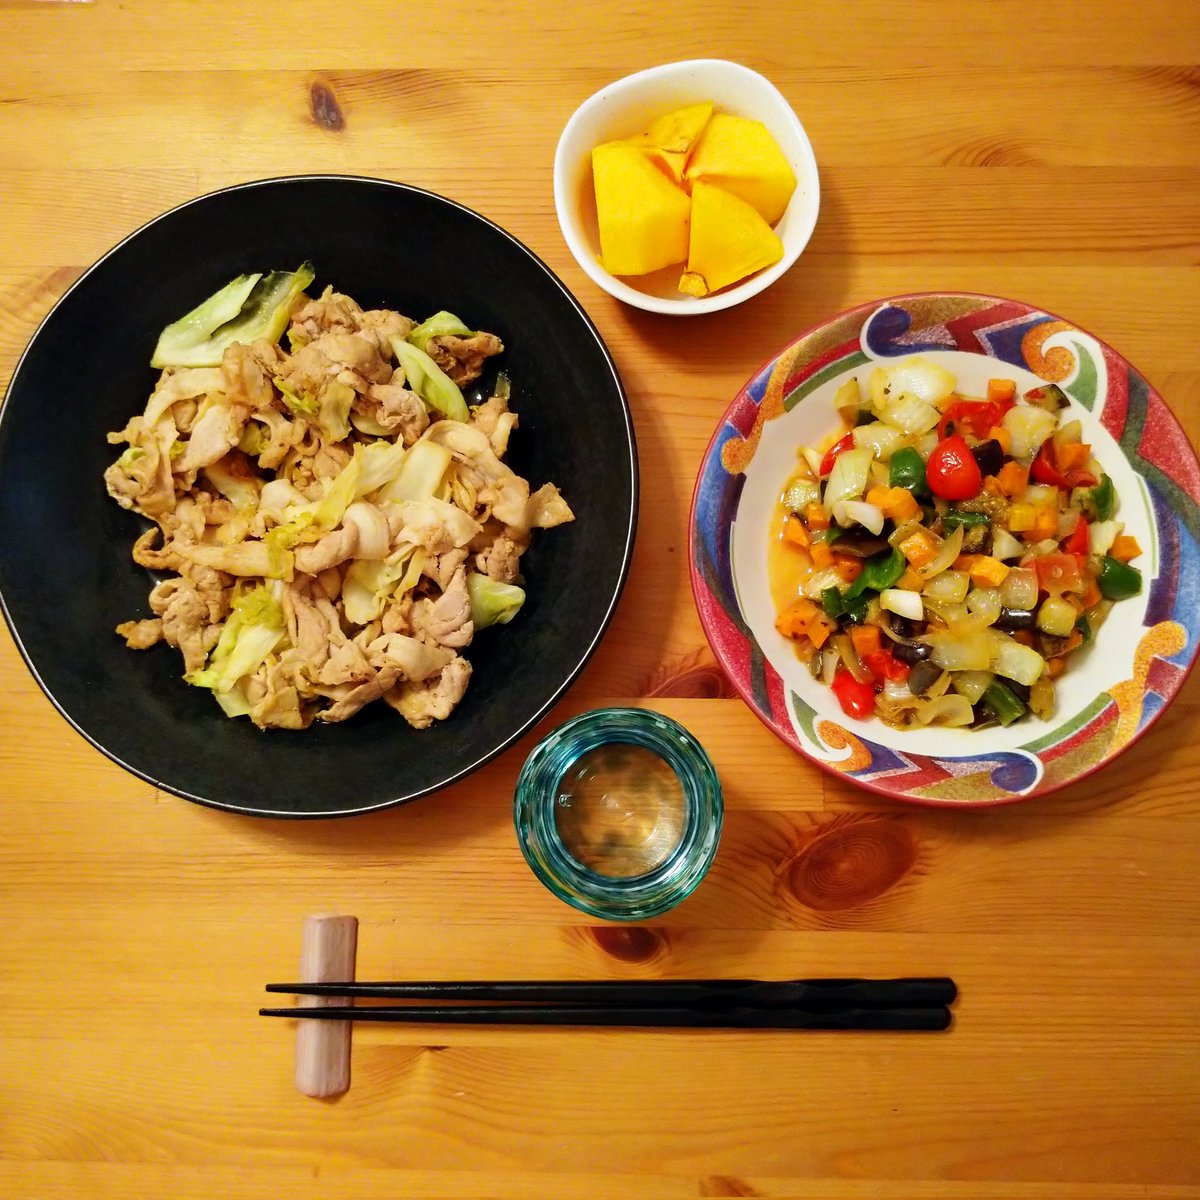 今日の夕飯💕豚とキャベツ炒め🔥お野菜はキューブ野菜のアラカルト炒めde🥦✨柿も食べるよ💕🤣呑まれる方はかんぱーい🍻